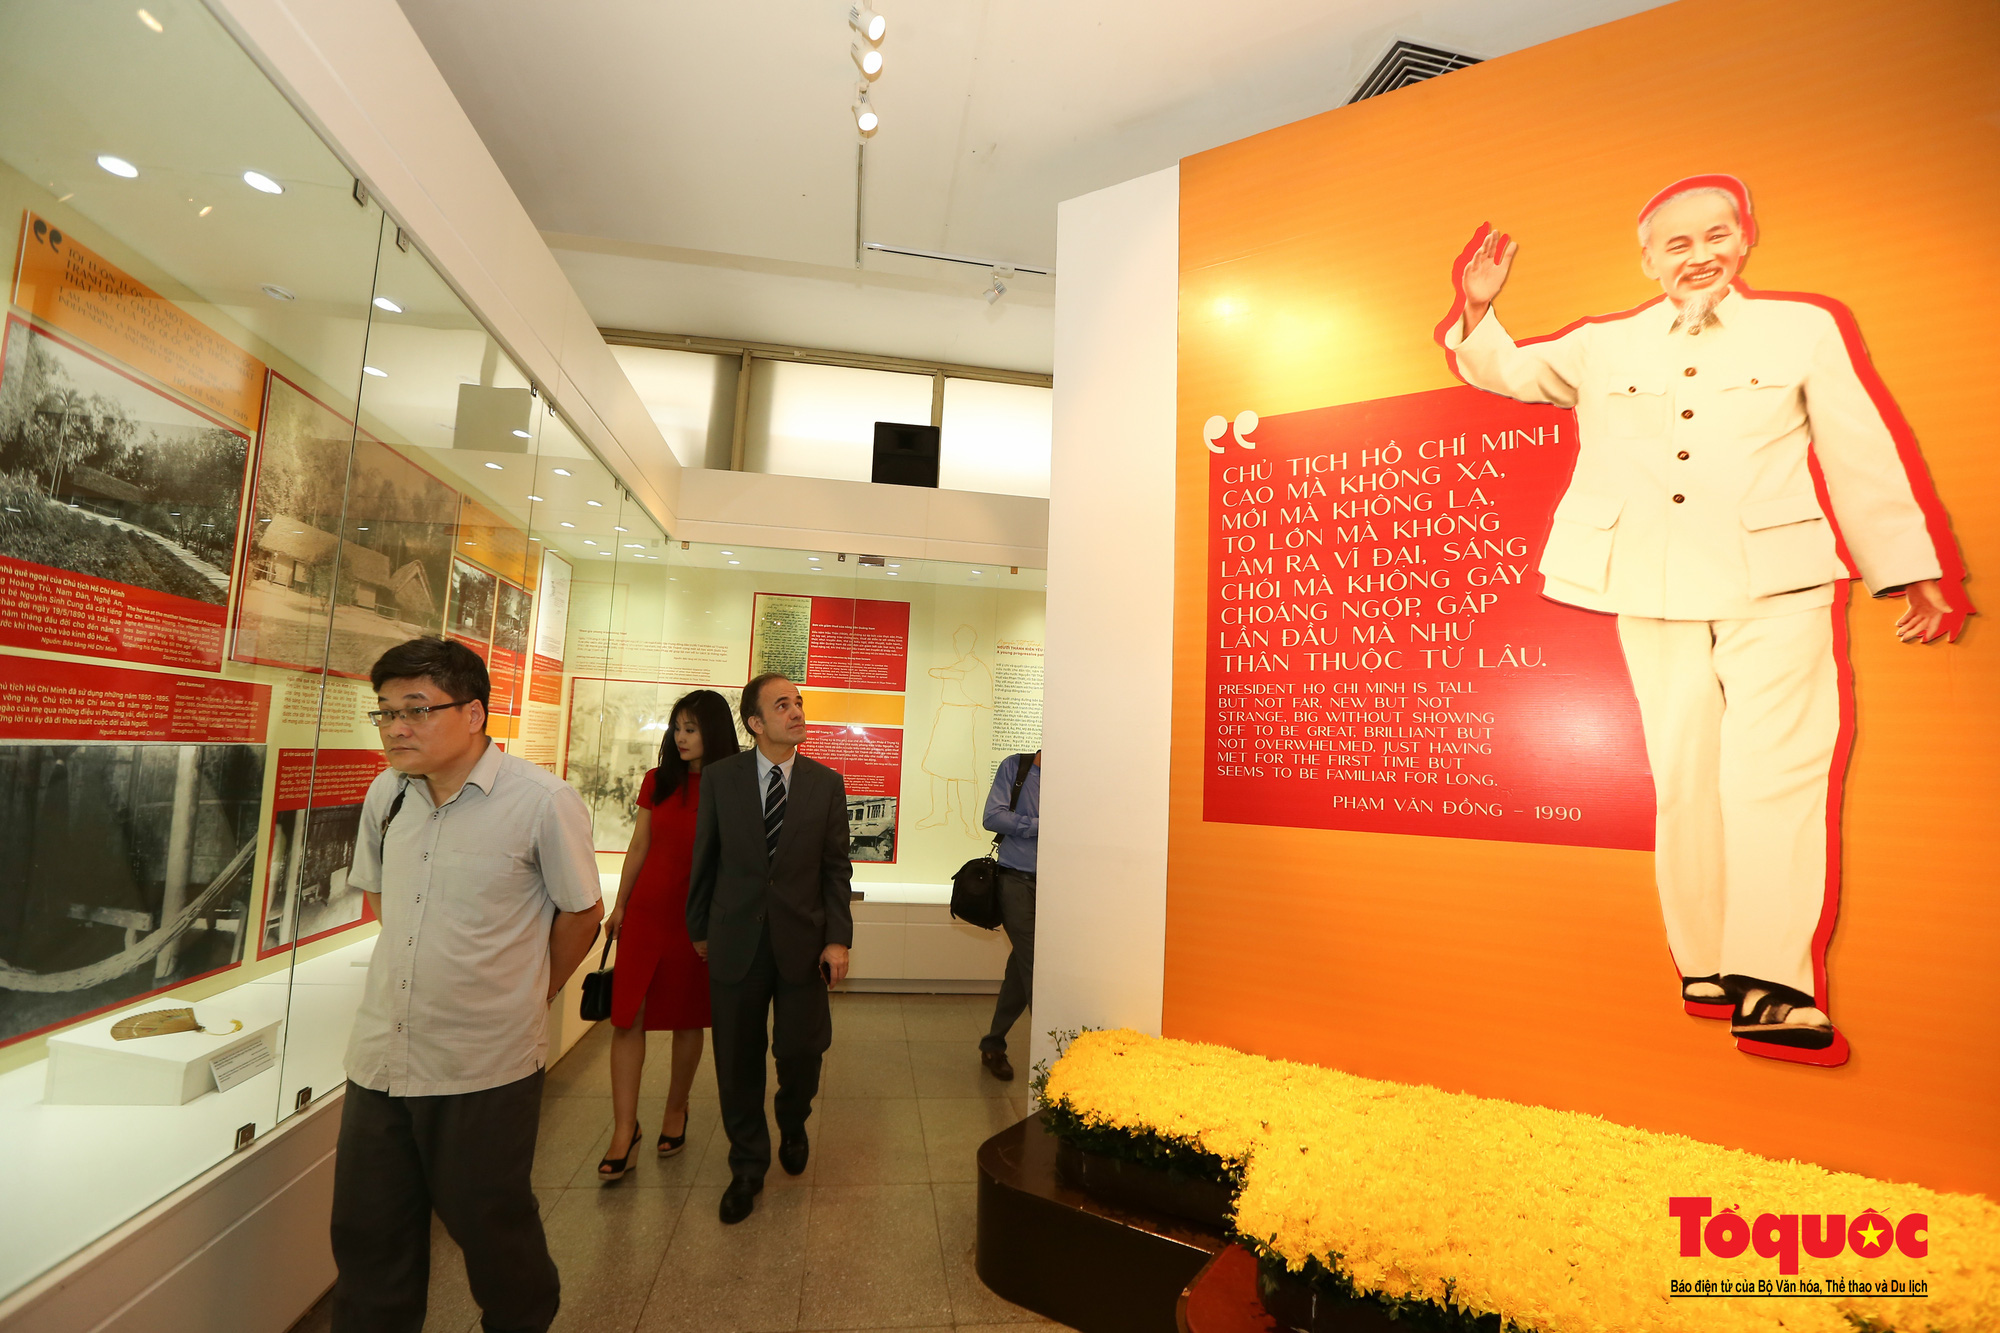 Khai mạc trưng bày chuyên đề: Hồ Chí Minh - Những nét phác họa chân dung; Những tấm gương bình dị mà cao quý  - Ảnh 5.